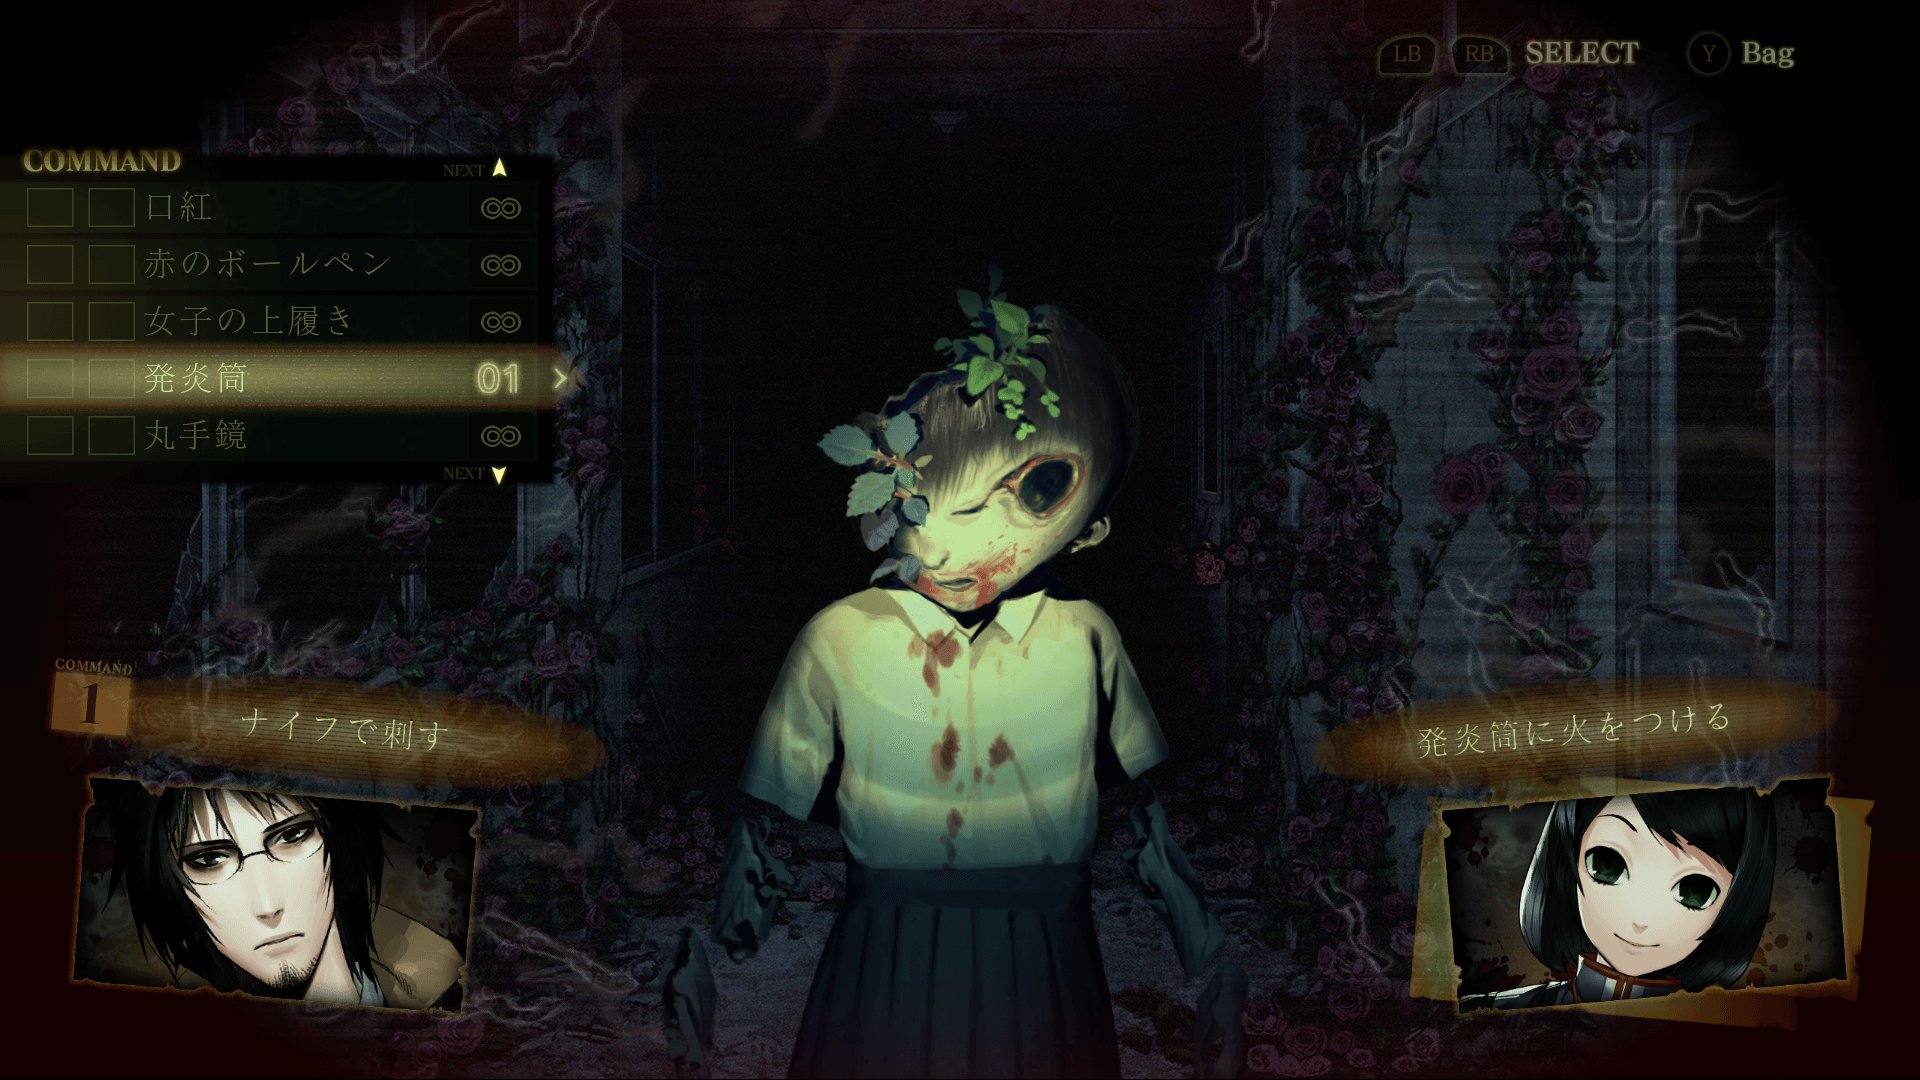 画风诡异惊悚 恐怖游戏《死印》10月登陆日本Xbox One